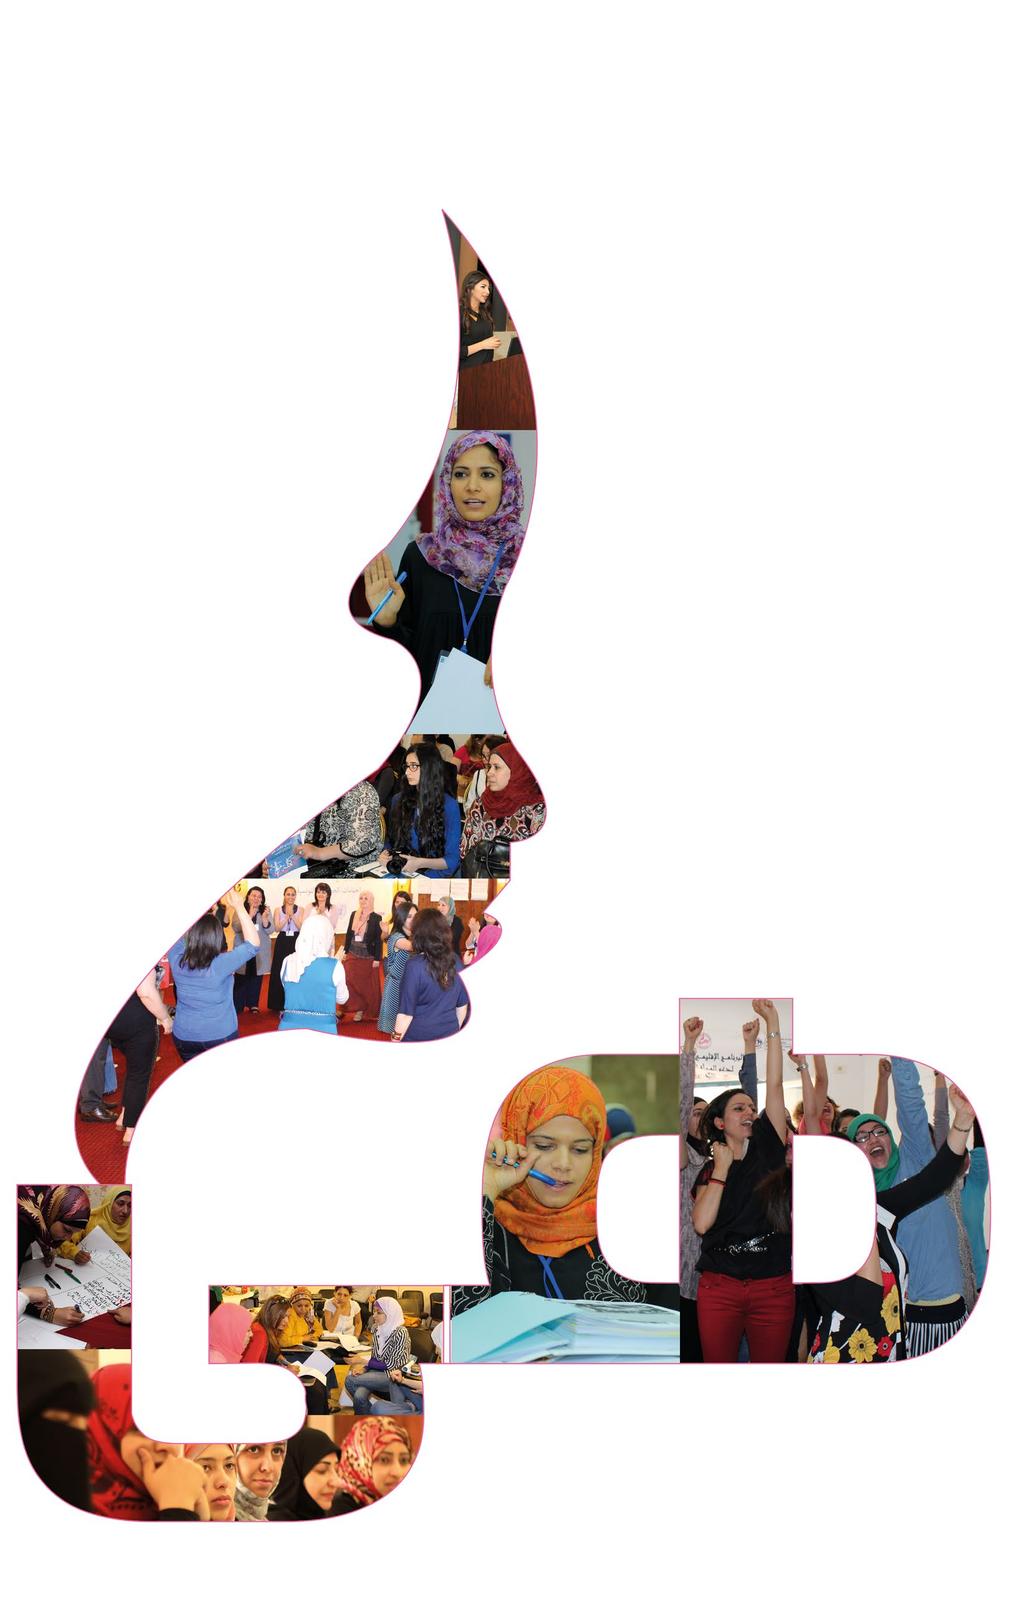 برنامج هى لدعم المرأة القيادية مقدمة فى تحليل ورسم السياسات العامة دليل المتدربة سنة ٢٠١٥ م الطبعة